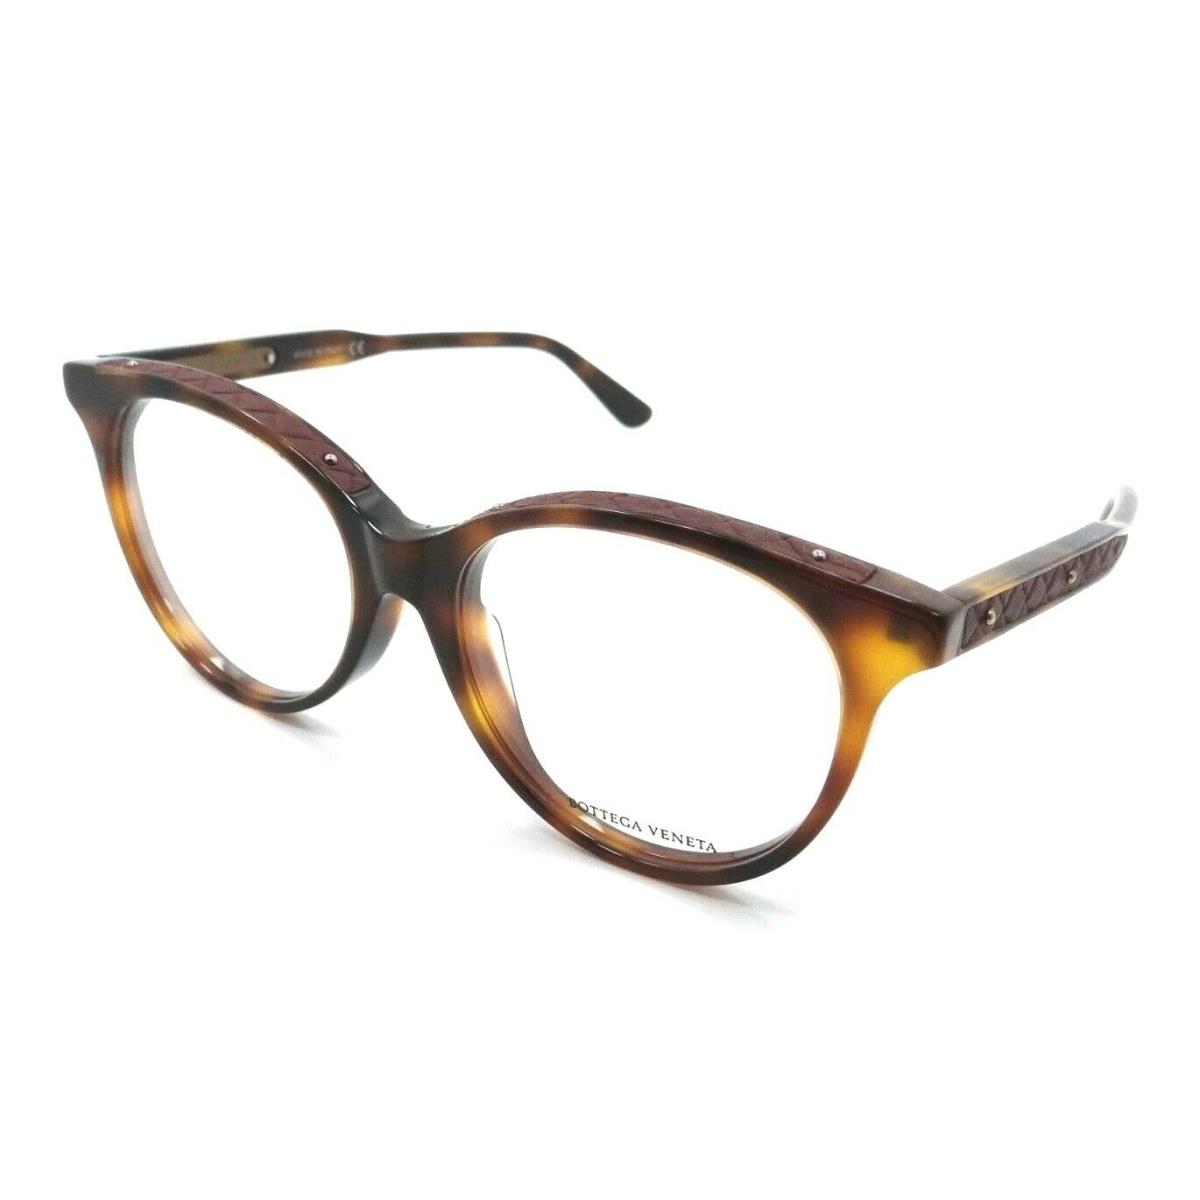 Bottega Veneta Eyeglasses Frames BV0069OA 002 54-17-145 Havana / Red Asian Fit